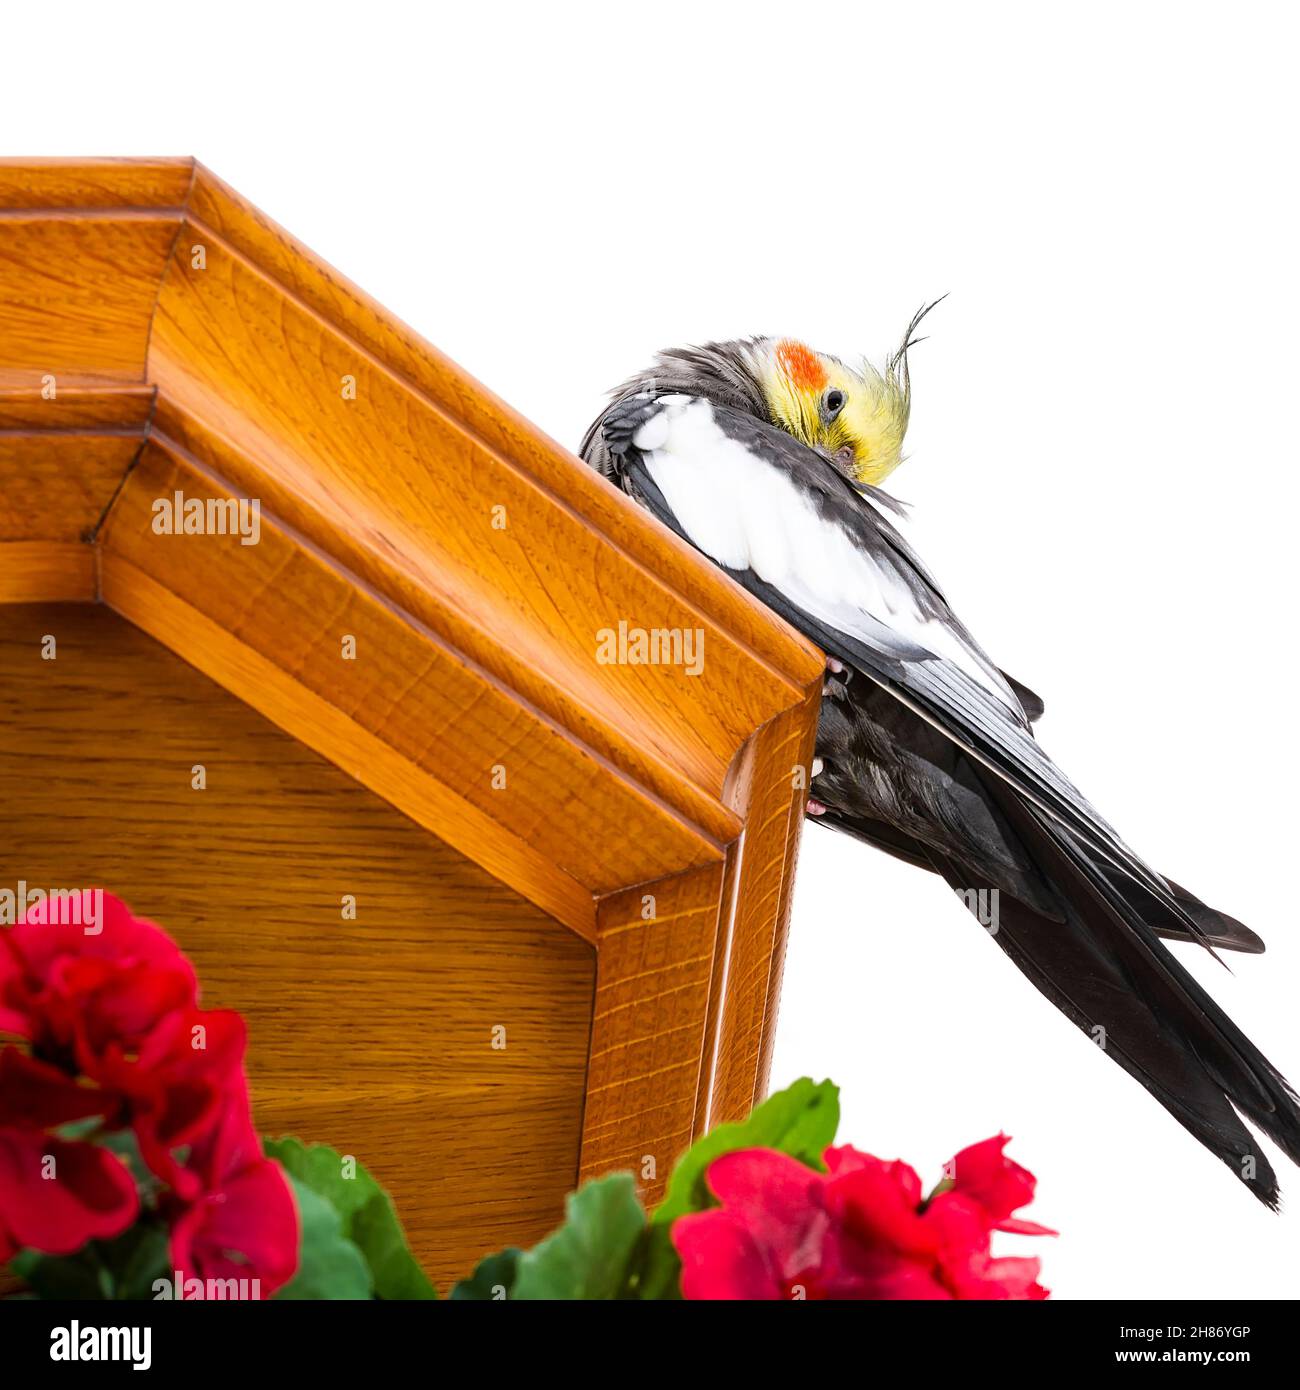 Photographie d'un oiseau appelé Carolina ou Nymph lavage sur un fond blanc.la photo est prise en format carré et au premier plan il y a une bouqu Banque D'Images